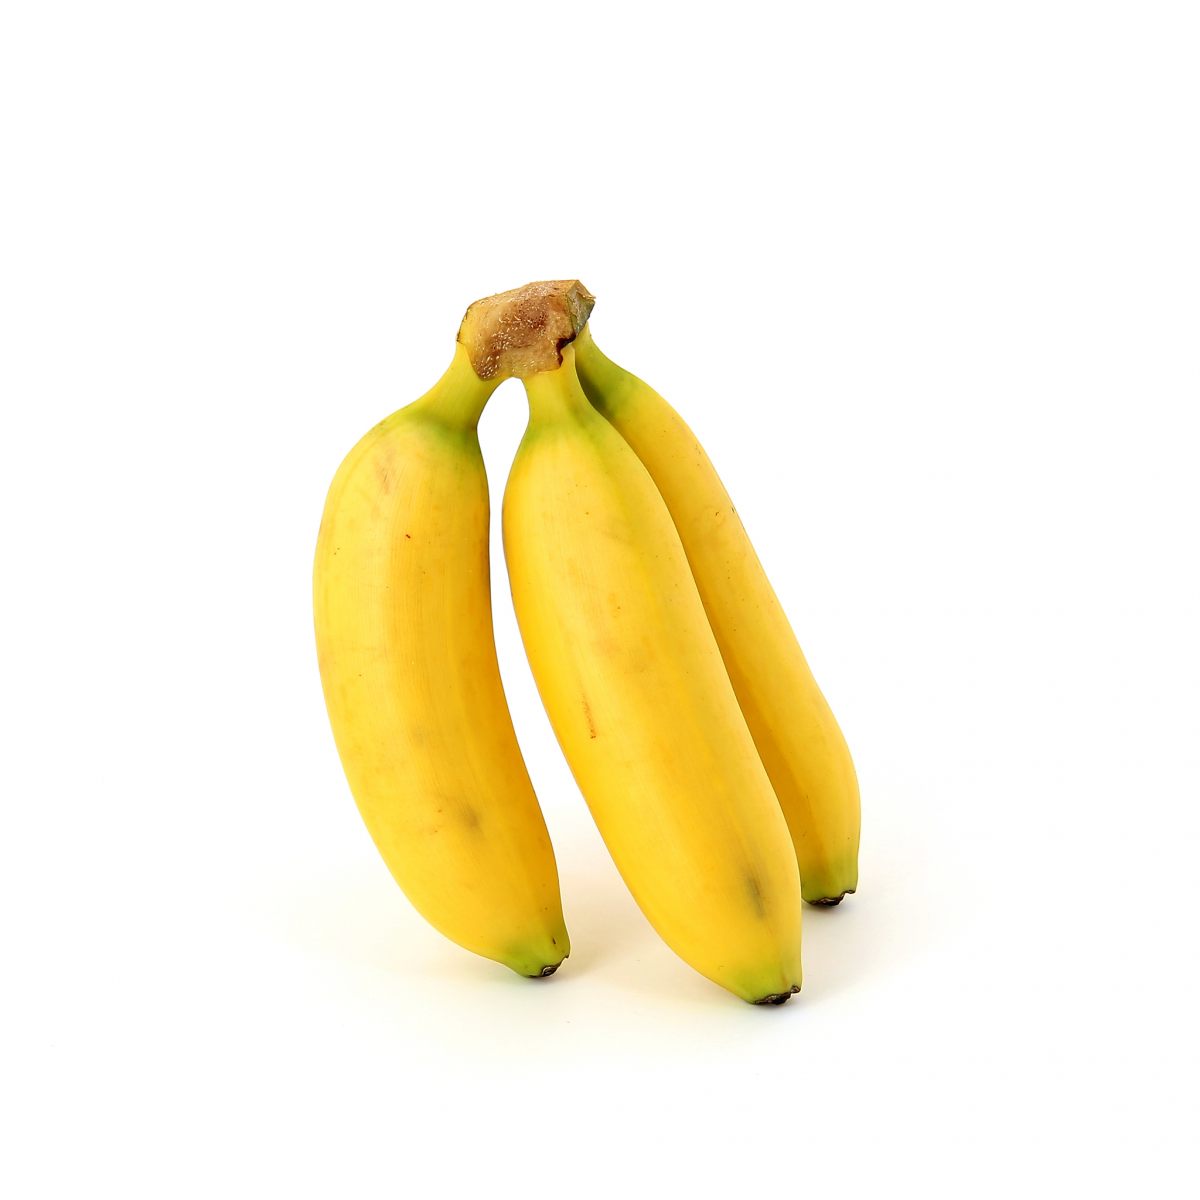 Banane (fruits)